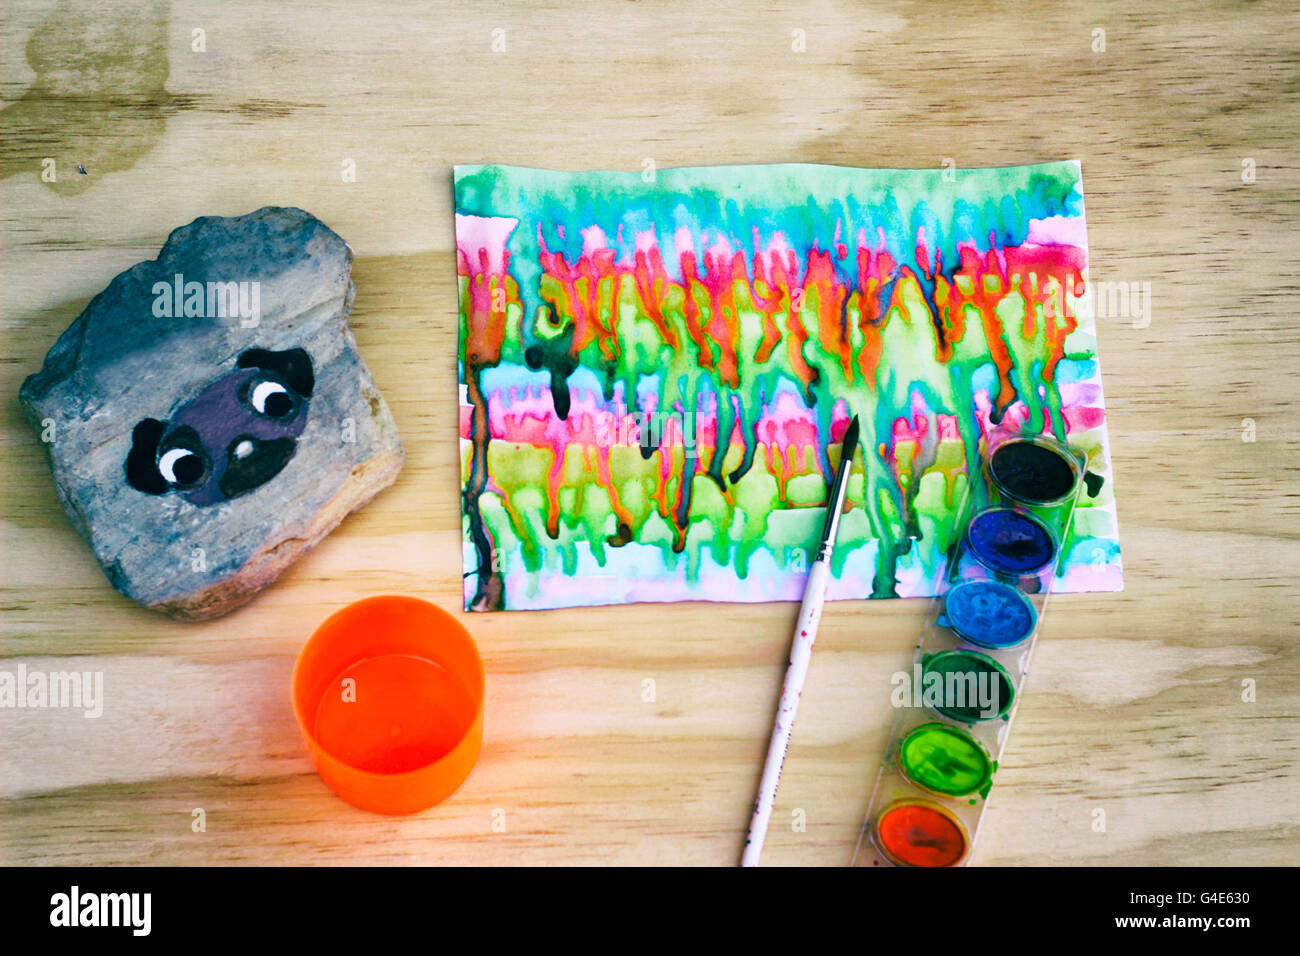 Foto von Aquarellfarbe, einen Pinsel und einen Stein mit einem gemalten Mops Hund drauf auf einem Holztisch Stockfoto